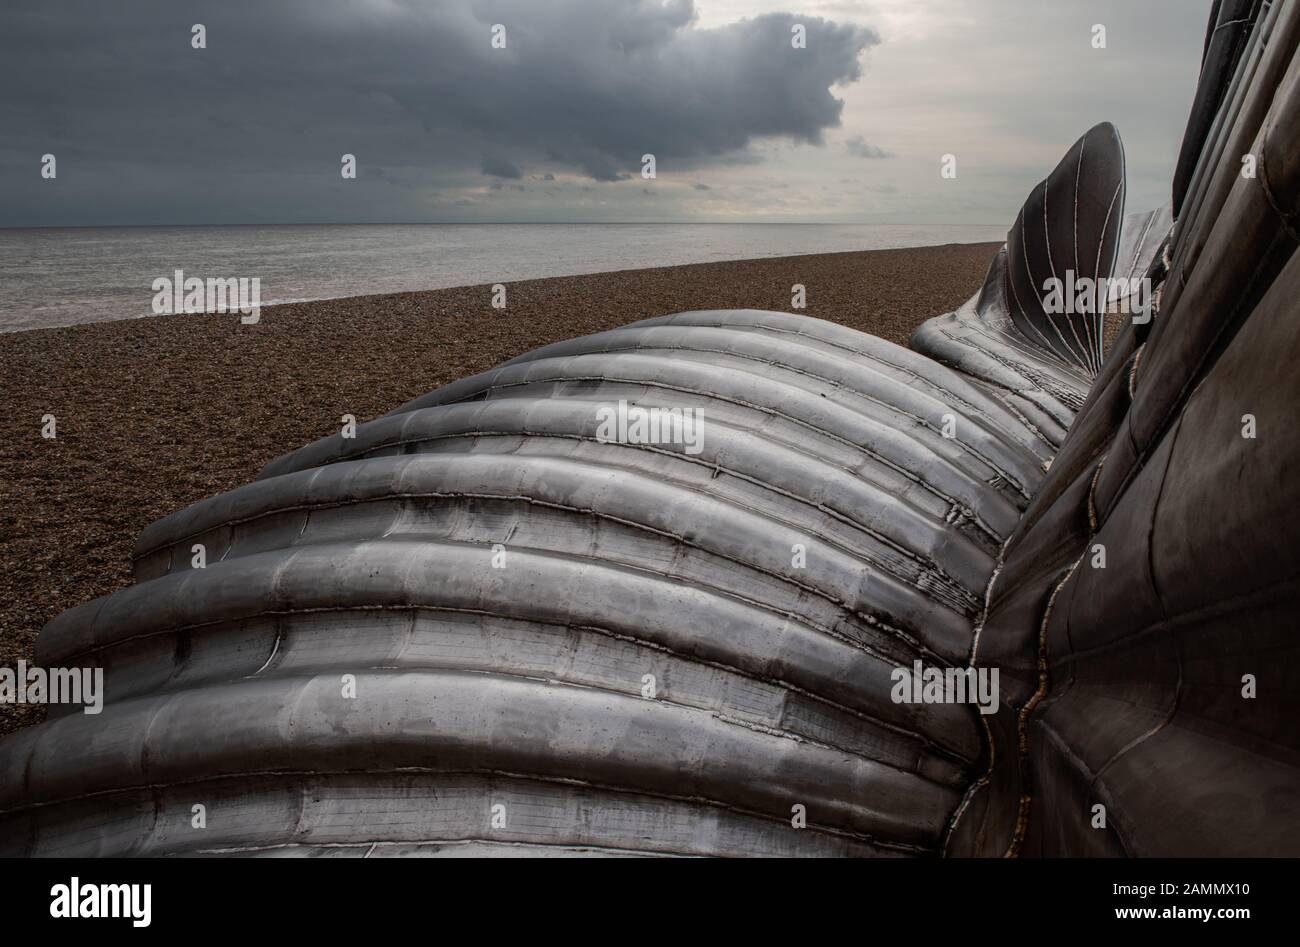 Aldeburgh Scallop Shell Sculpture Stock Photo